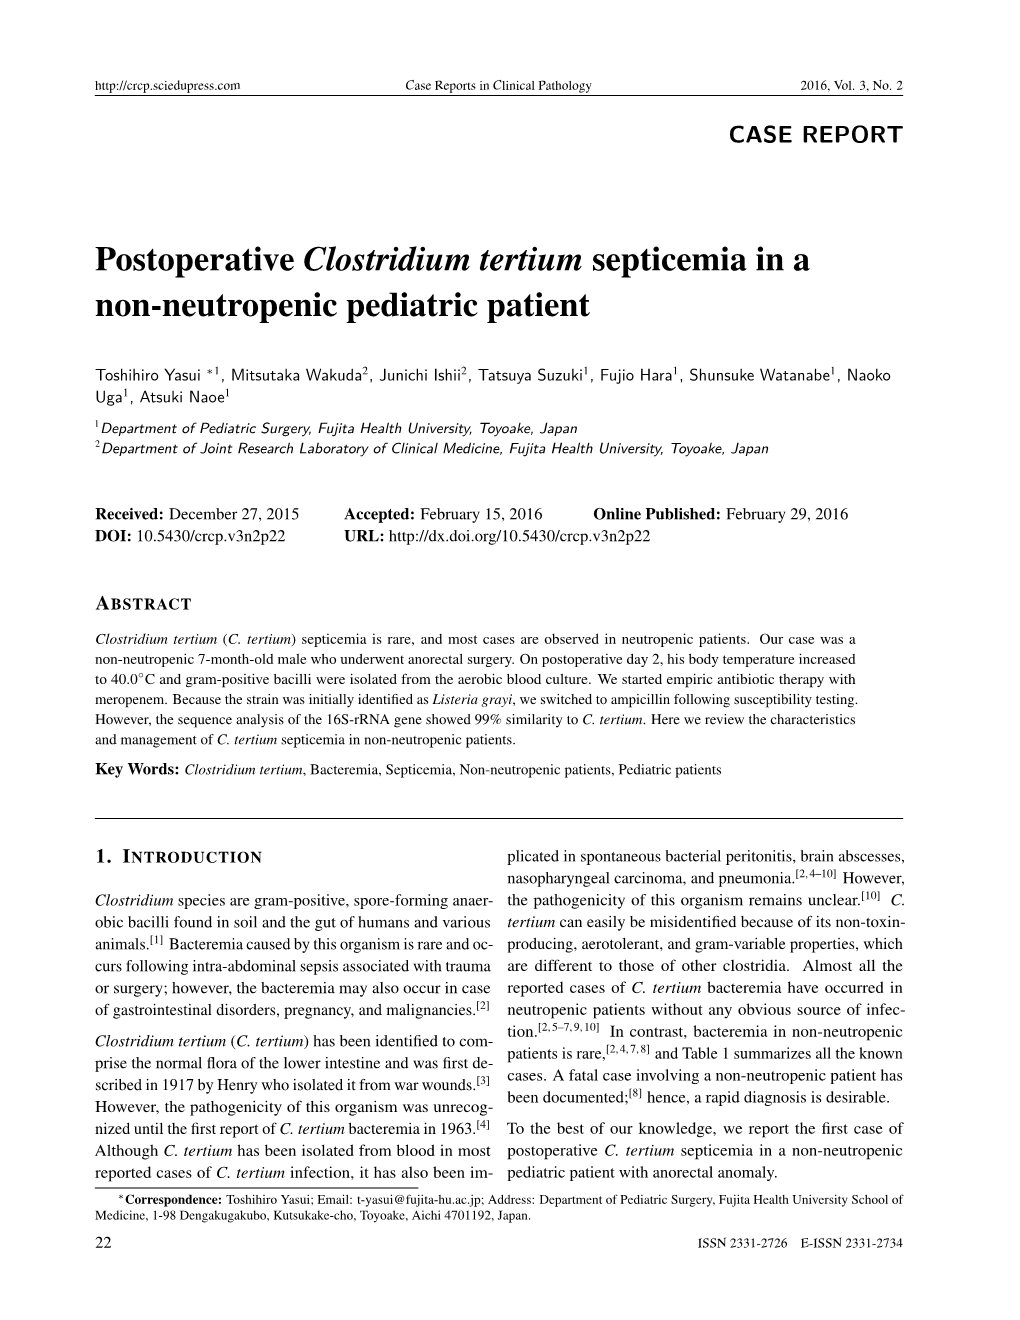 Postoperative Clostridium Tertium Septicemia in a Non-Neutropenic Pediatric Patient